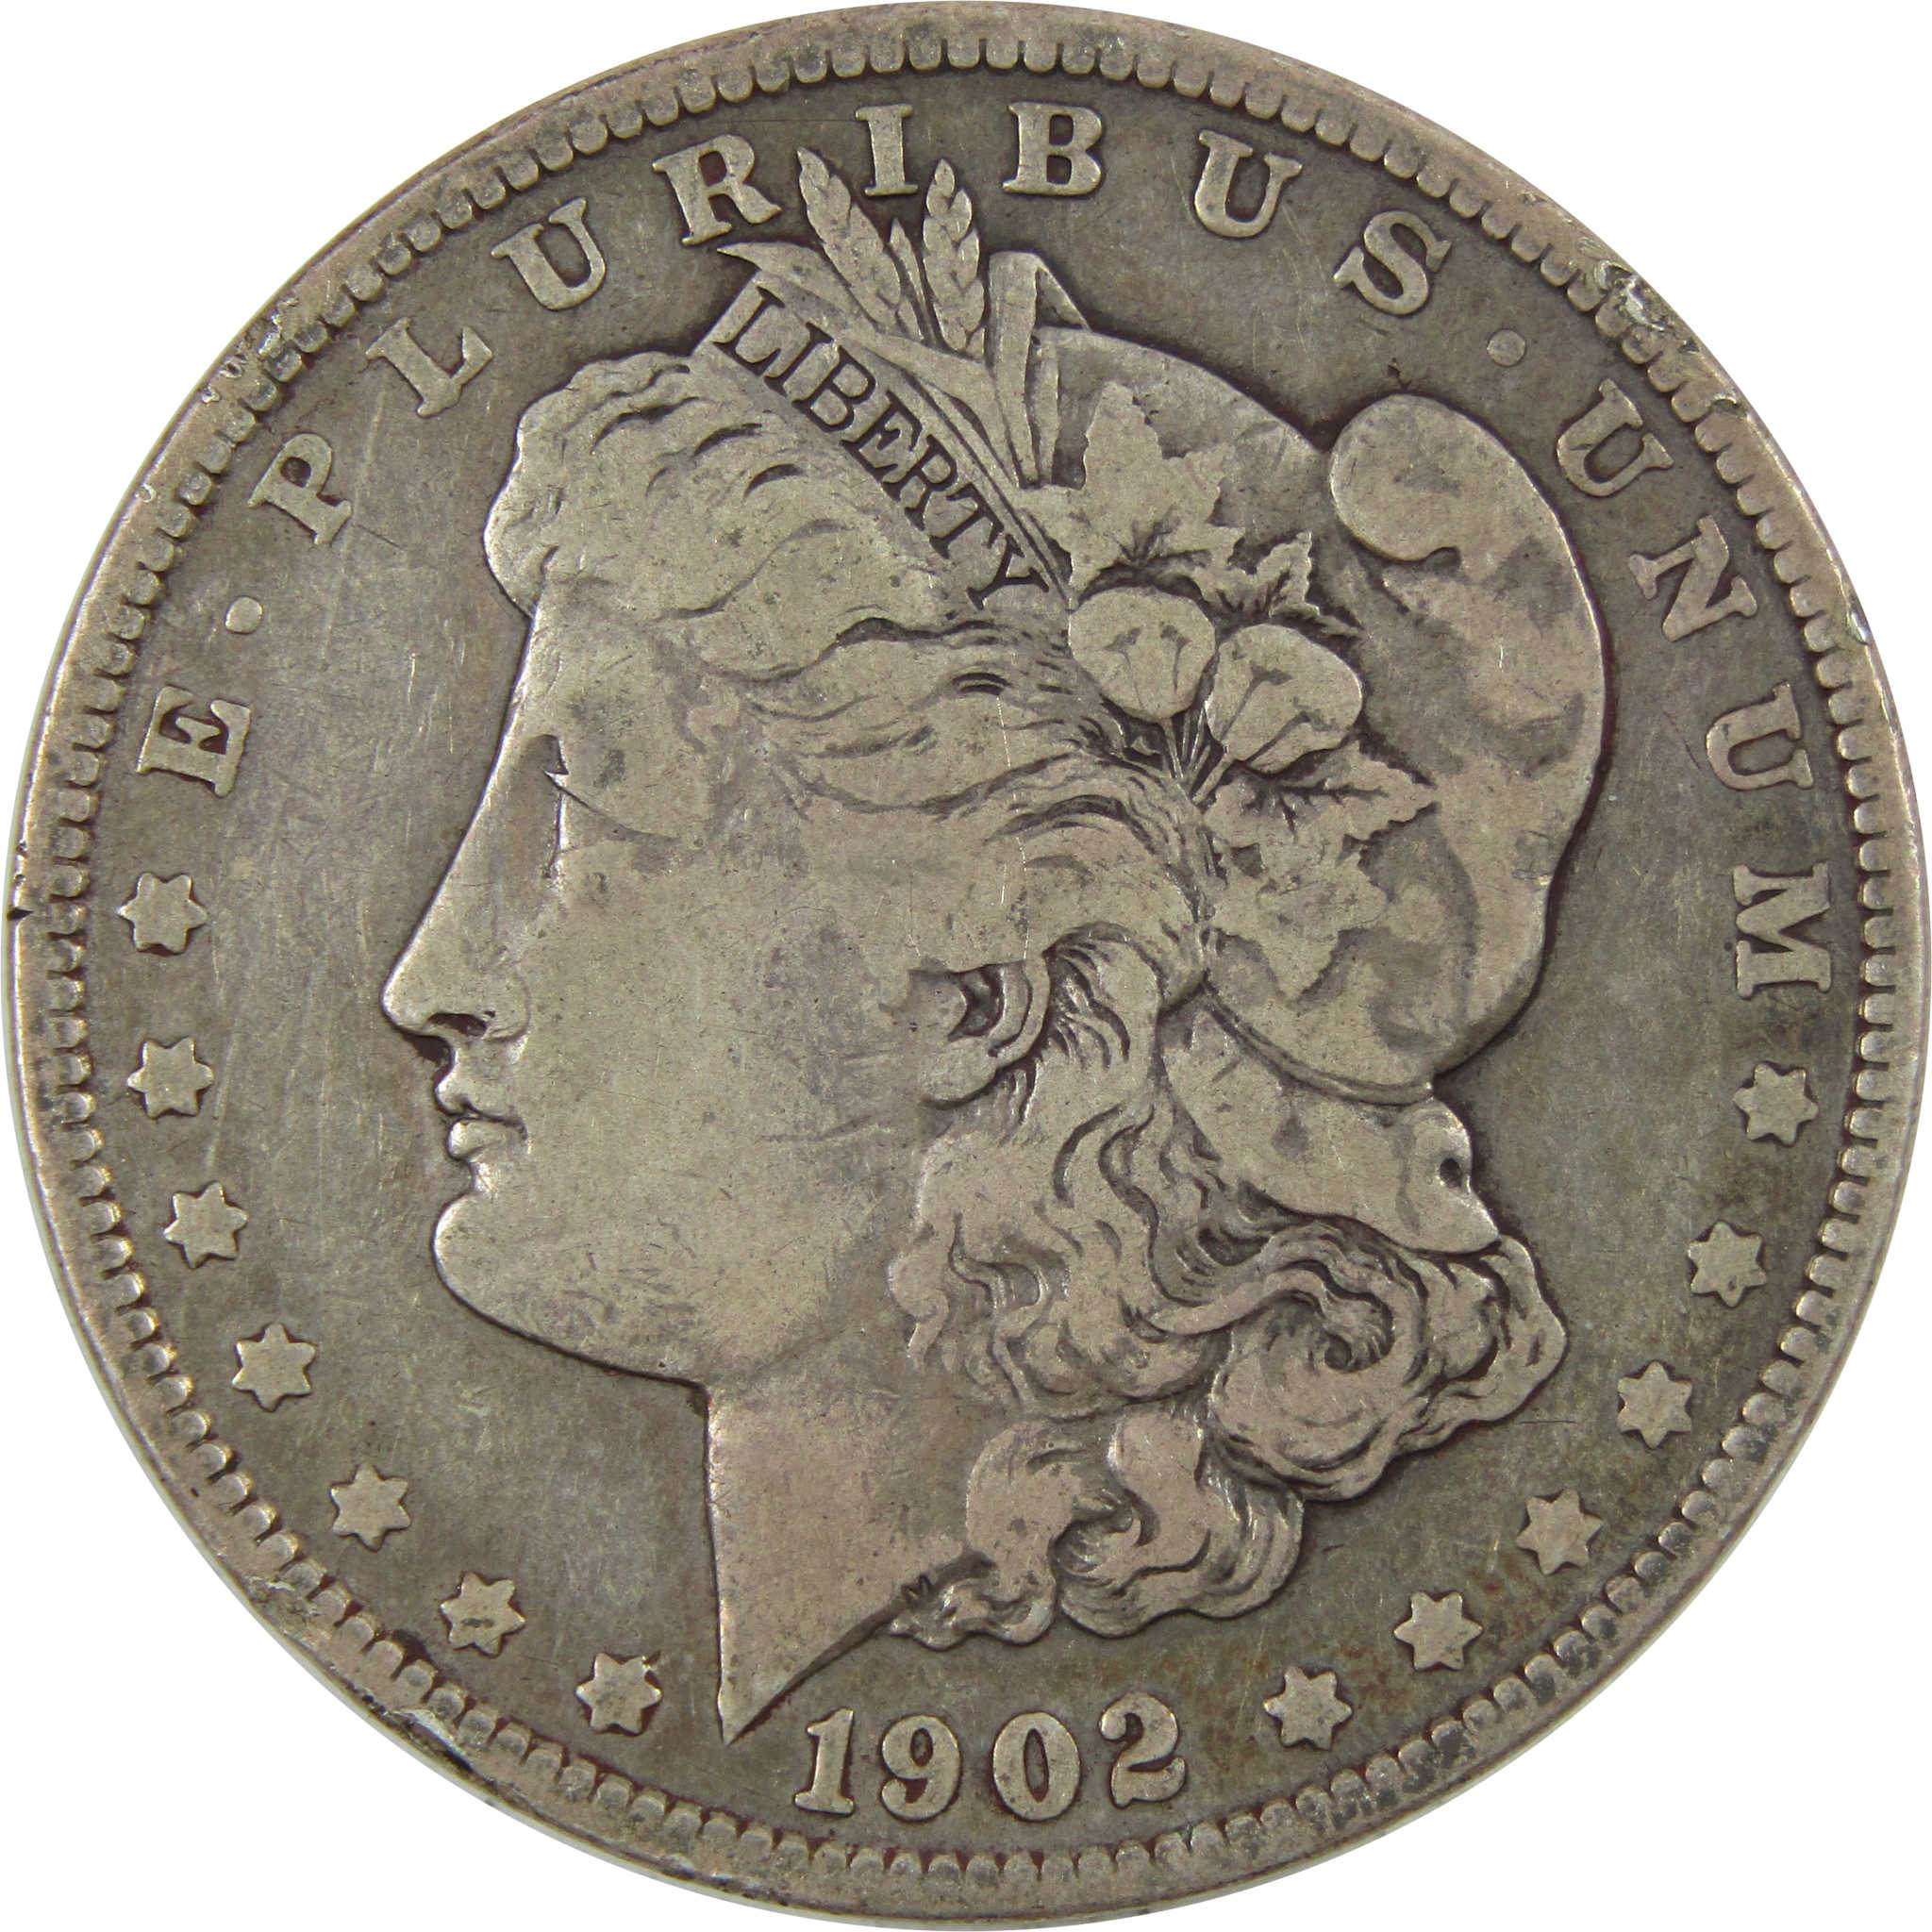 1902 Morgan Dollar F Fine 90% Silver $1 Coin SKU:I4750 - Morgan coin - Morgan silver dollar - Morgan silver dollar for sale - Profile Coins &amp; Collectibles